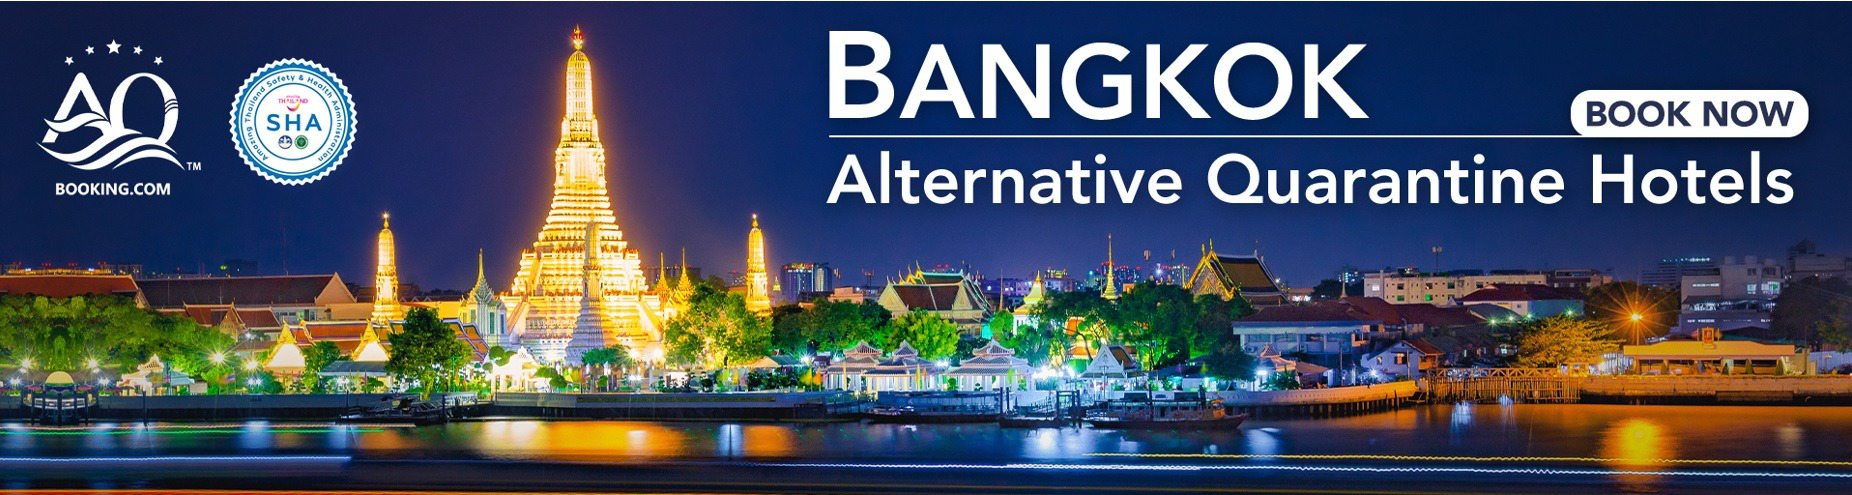 Bangkok Alternative Quarantine Hotels